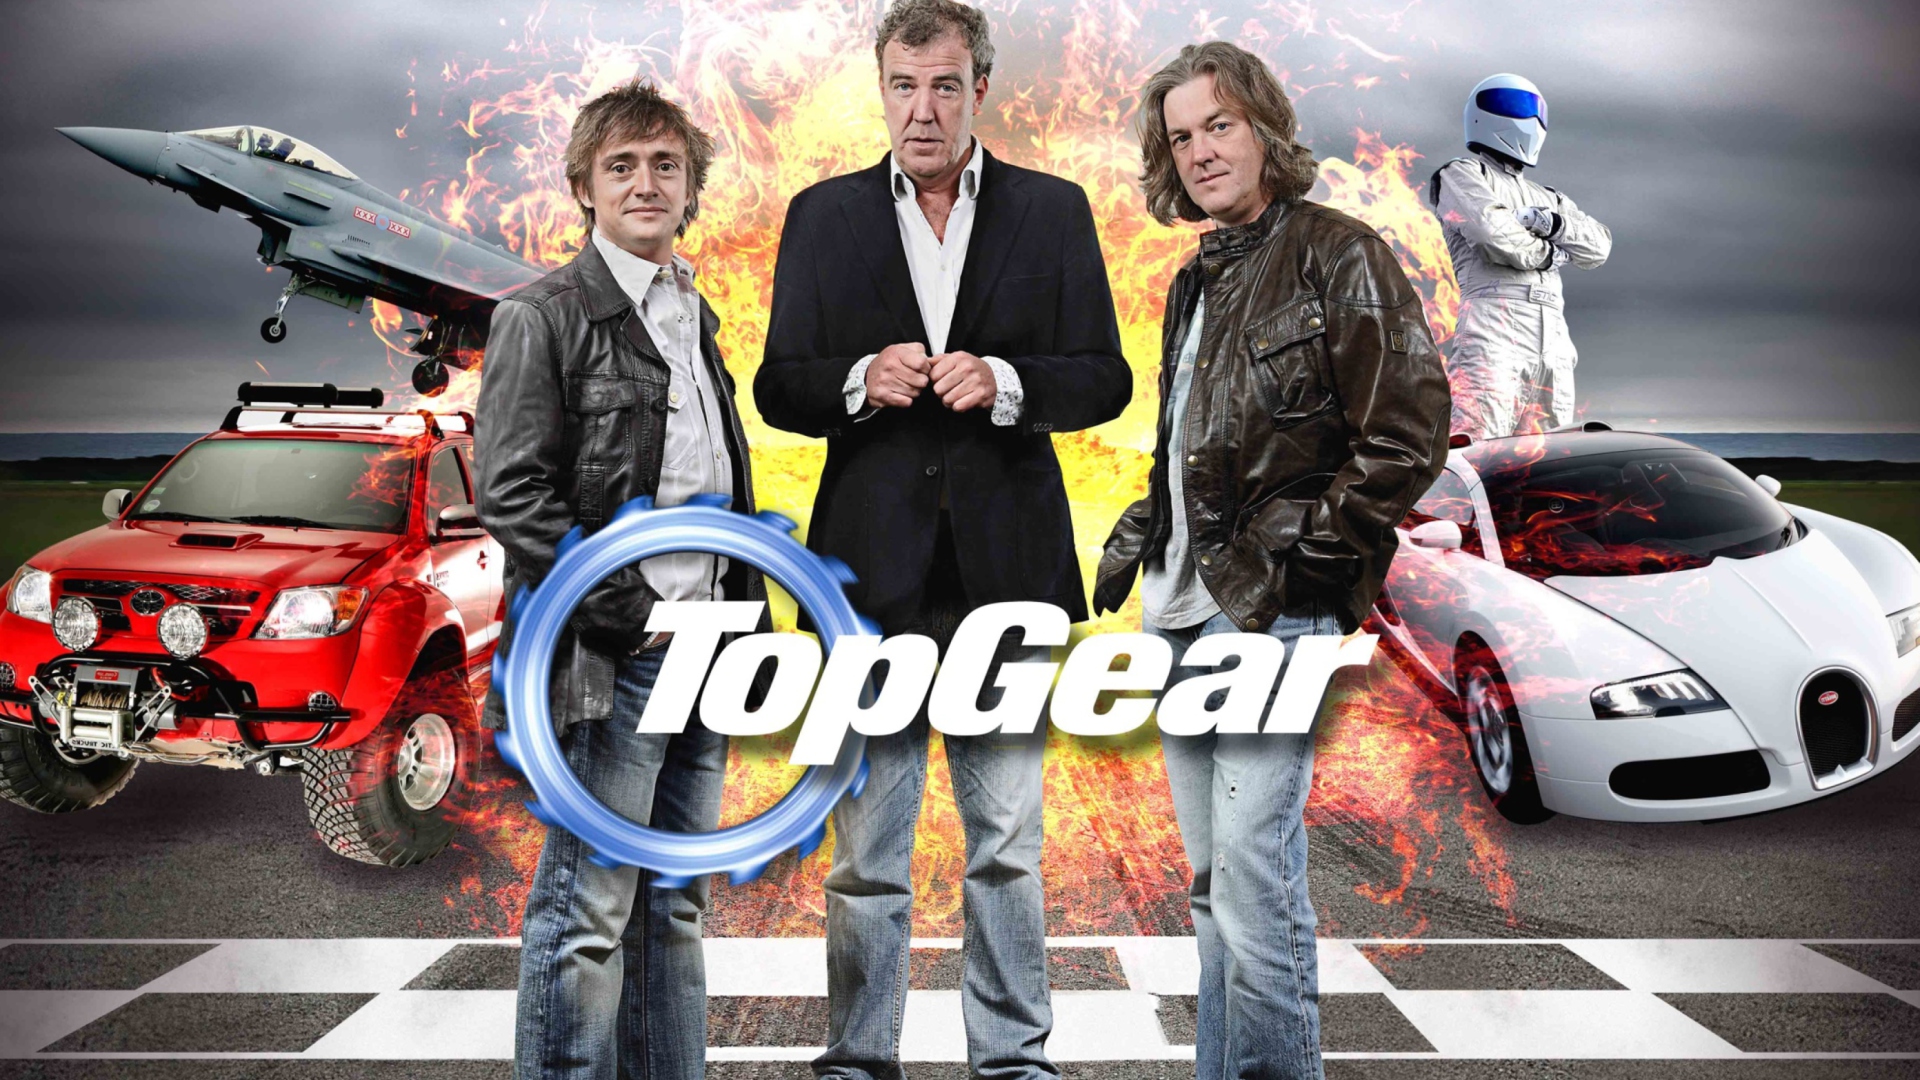 Das Top Gear Wallpaper 1920x1080